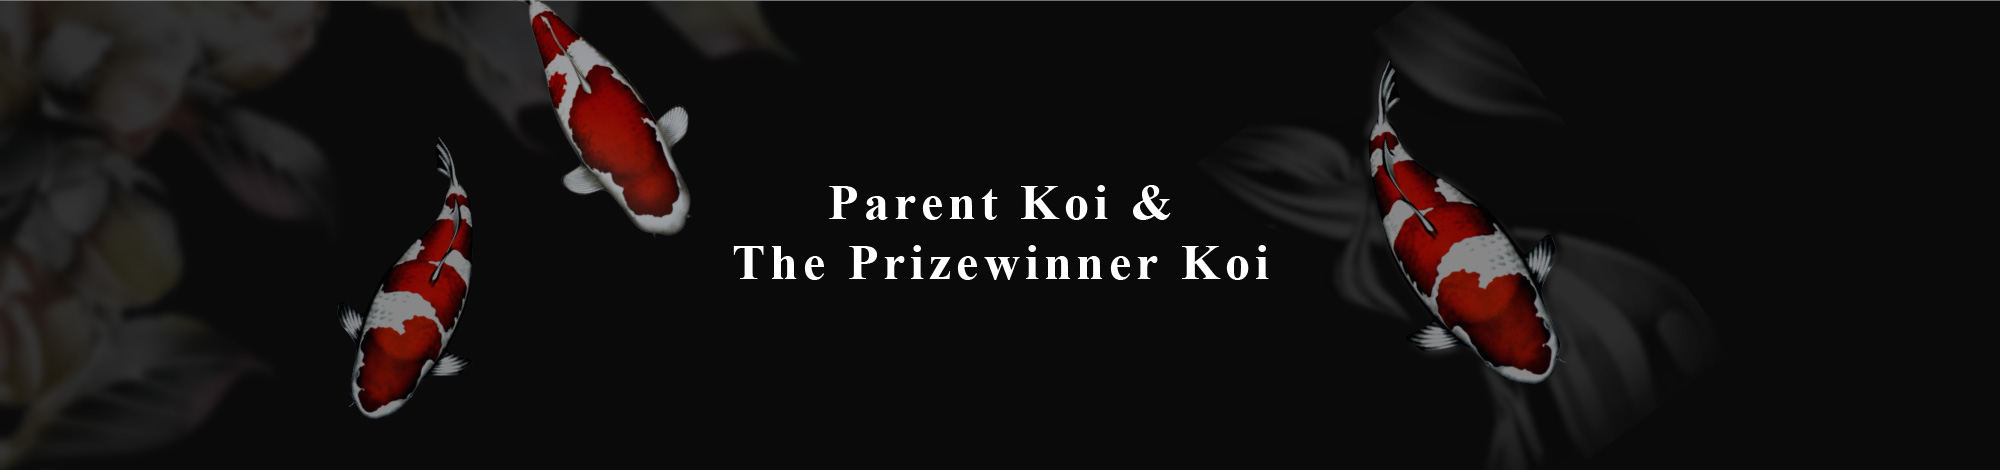 Parent Koi &The Prizewinner Koi